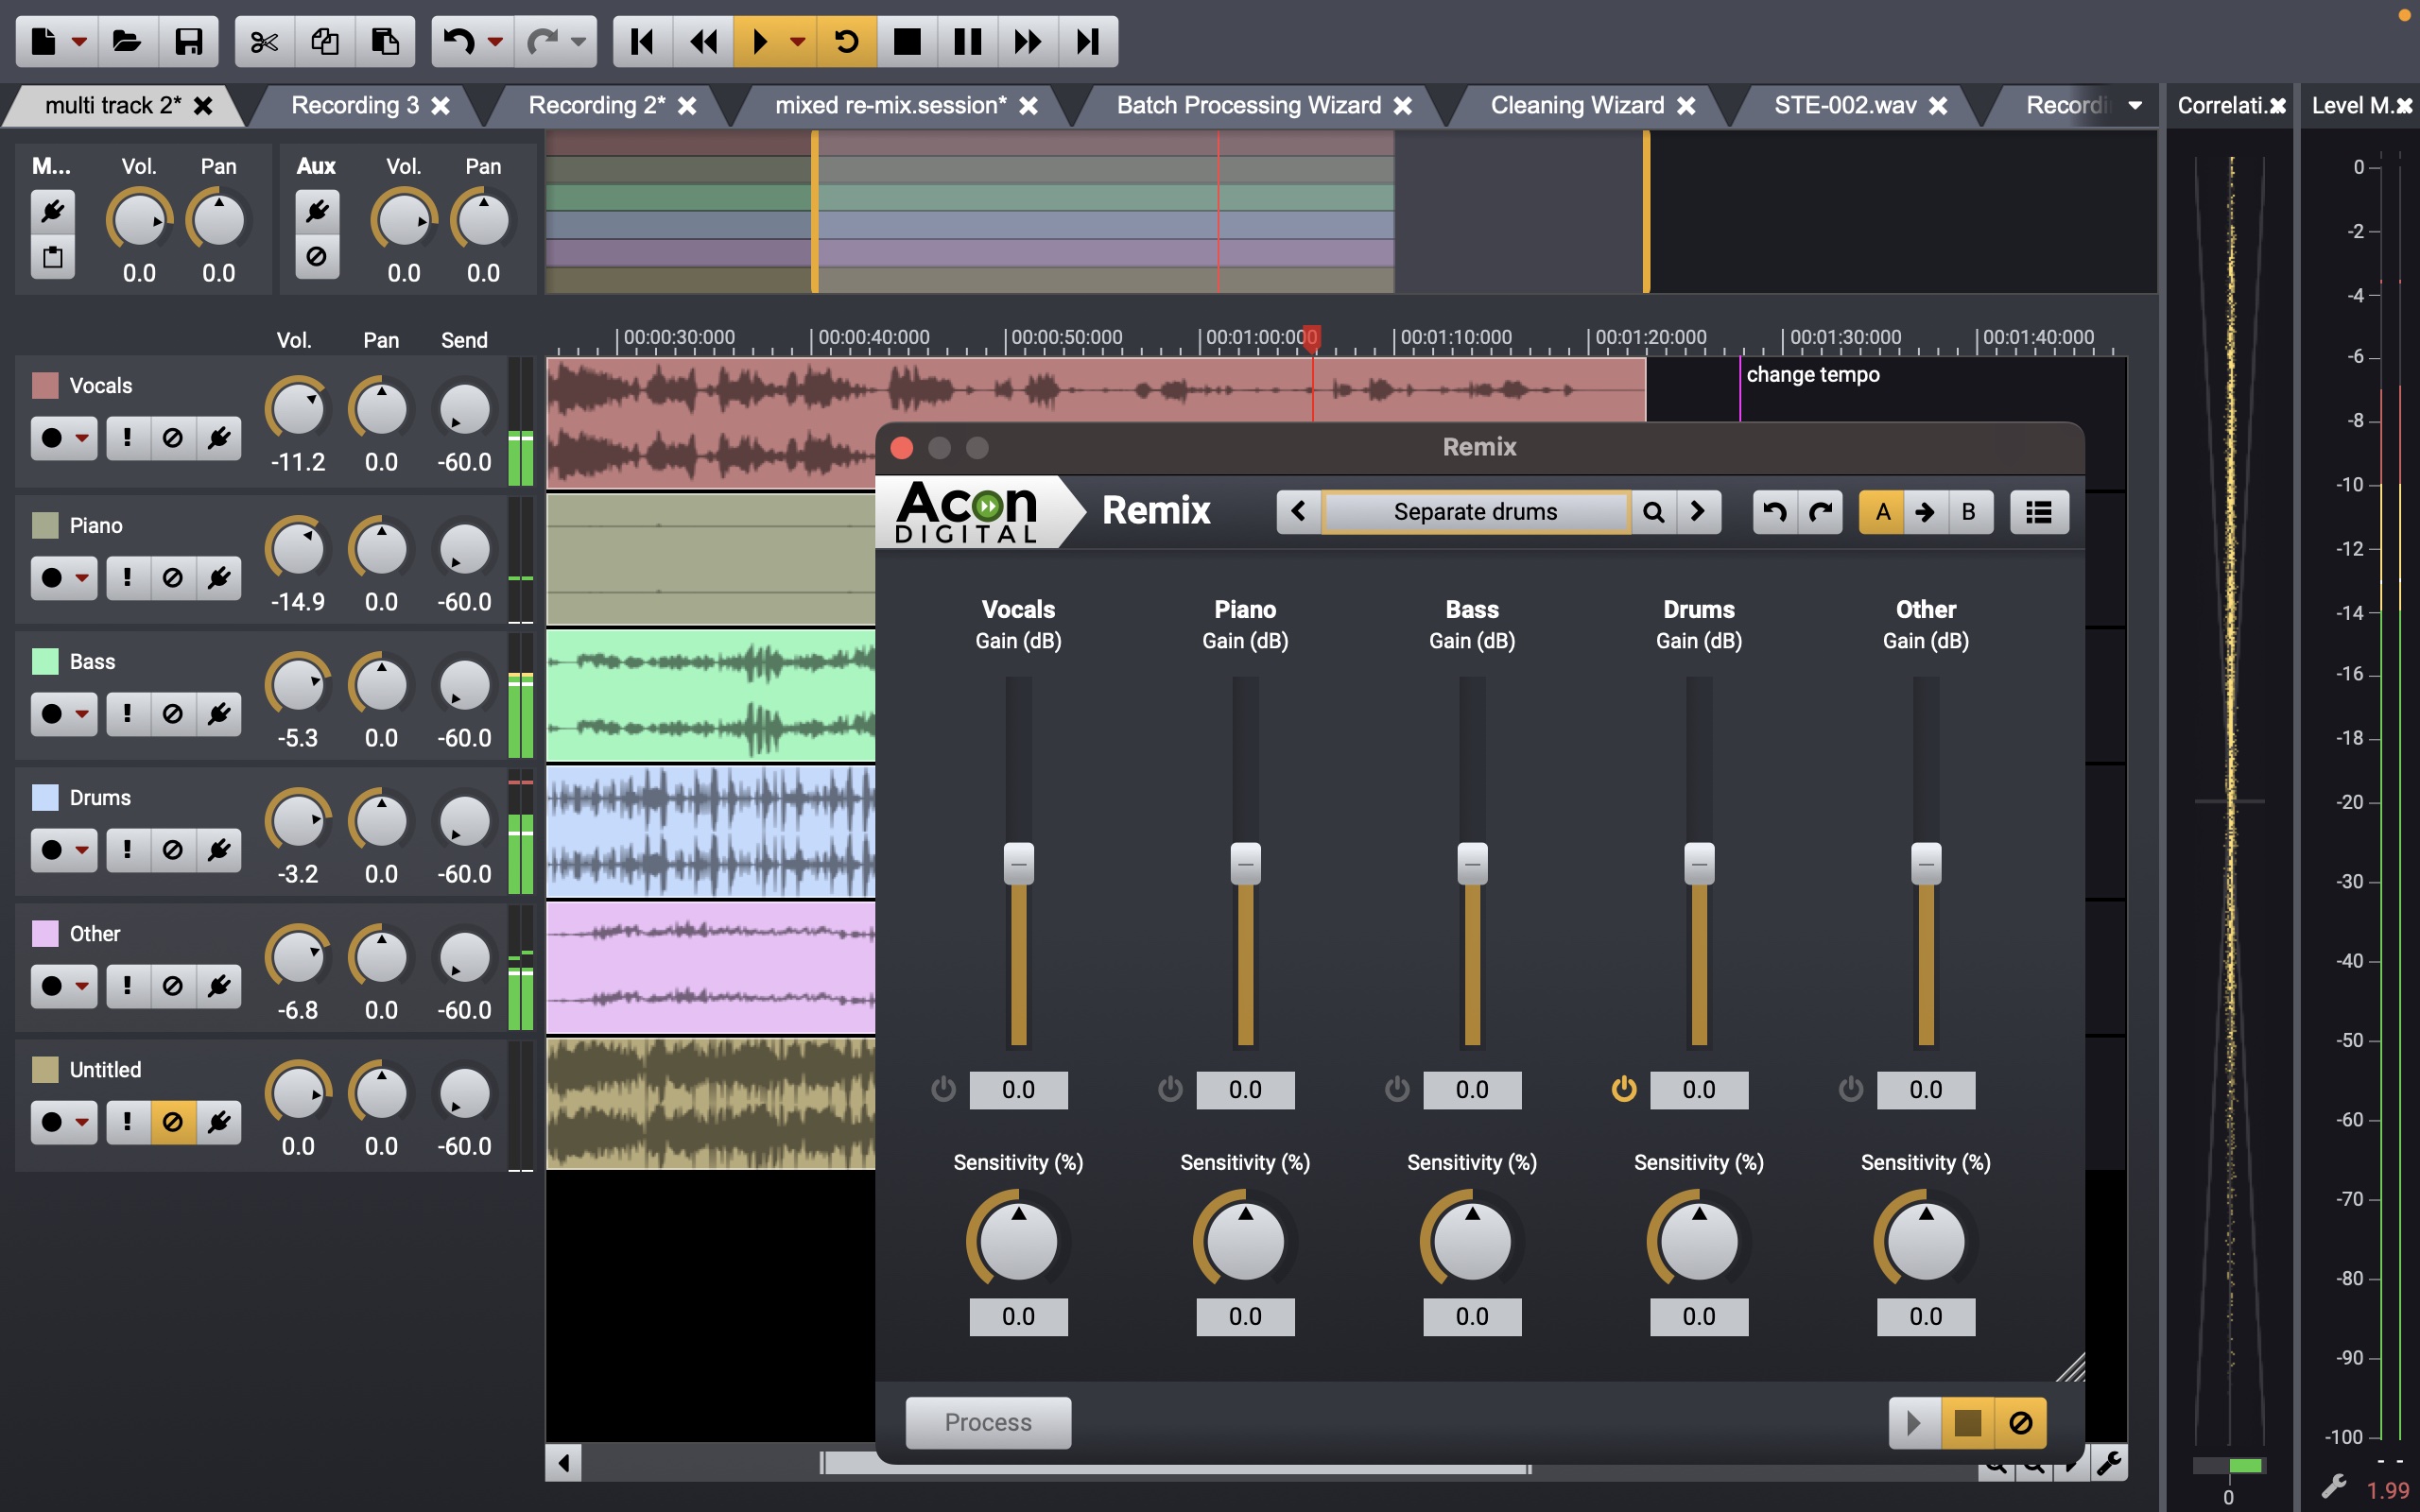 Editor de áudio Acon Digital Acoustica em ação